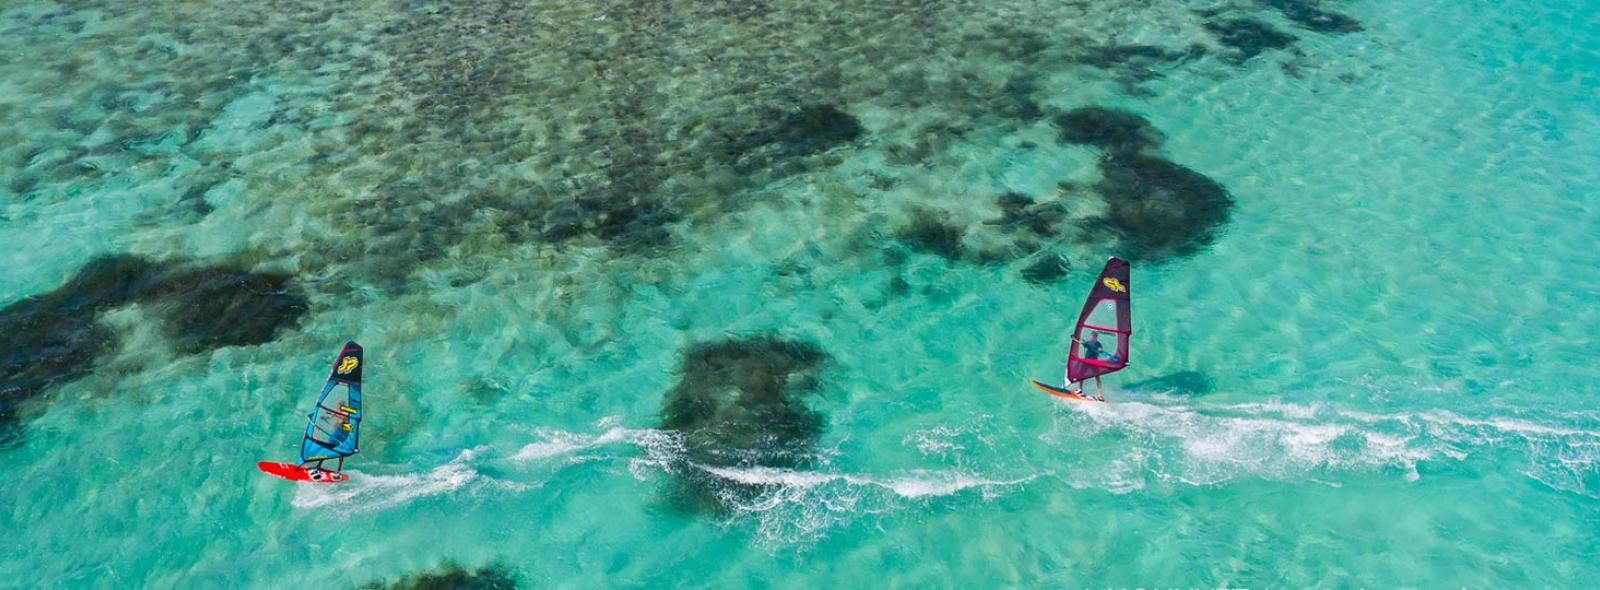 Windsurfeurs en action sur le lagon avec une eau paradisiaque turquoise et transparente à Madagascar